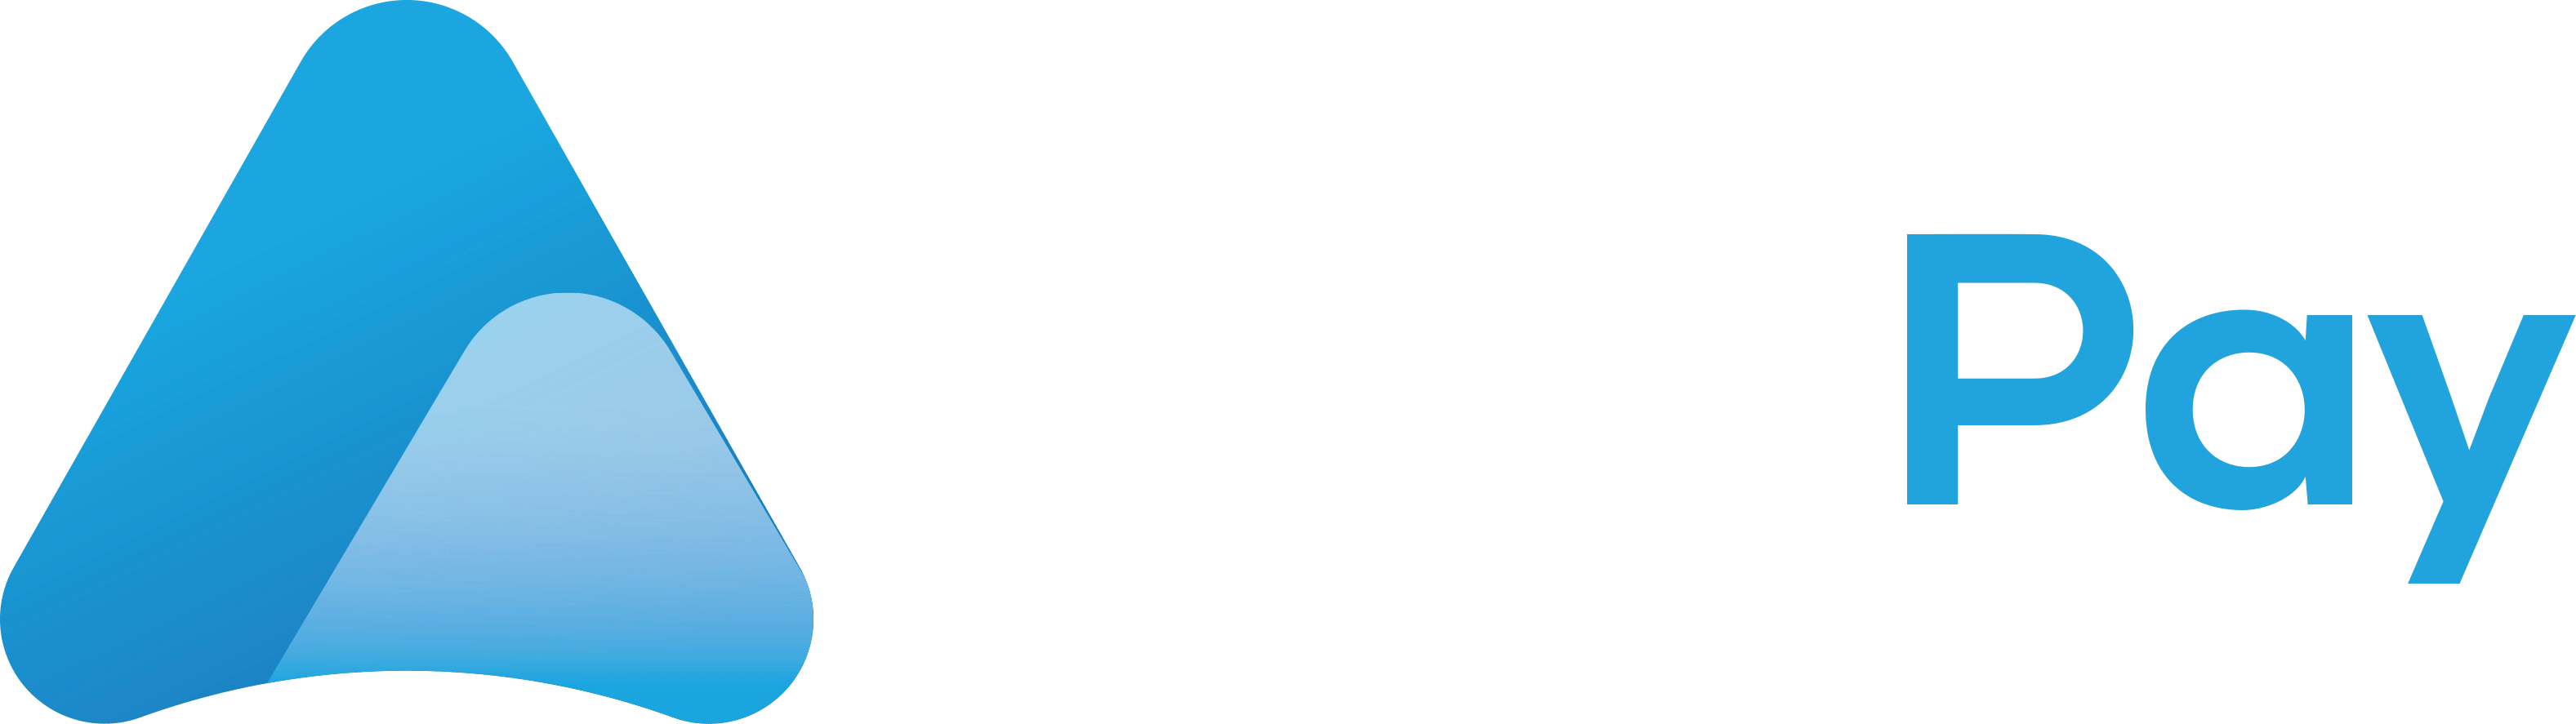 MassPay Logo - Dark Background